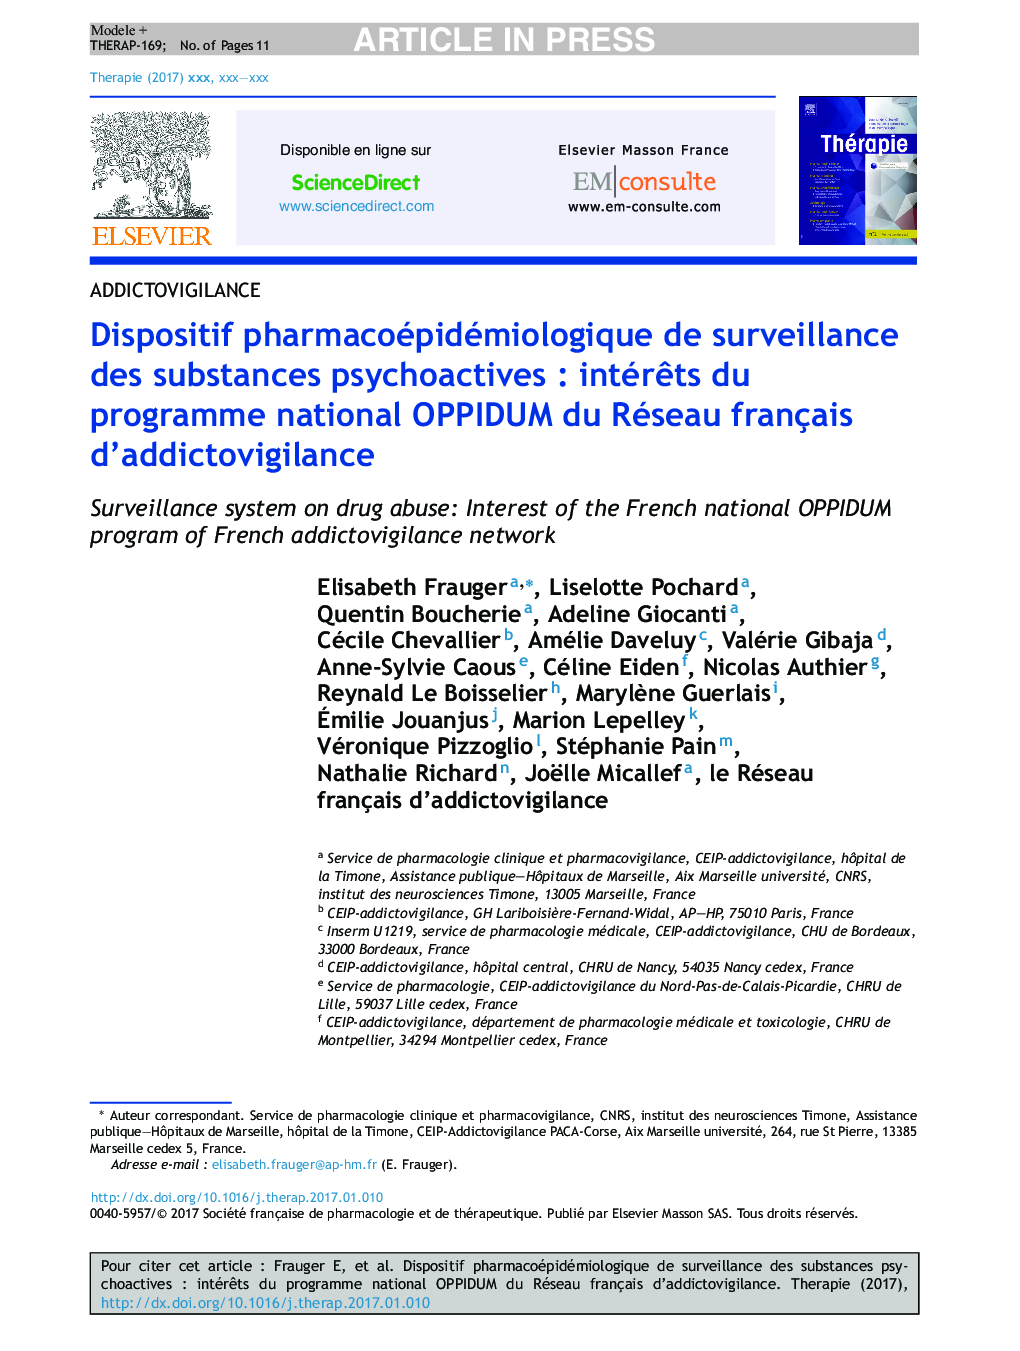 Dispositif pharmacoépidémiologique de surveillance des substances psychoactivesÂ : intérÃªts du programme national OPPIDUM du Réseau français d'addictovigilance